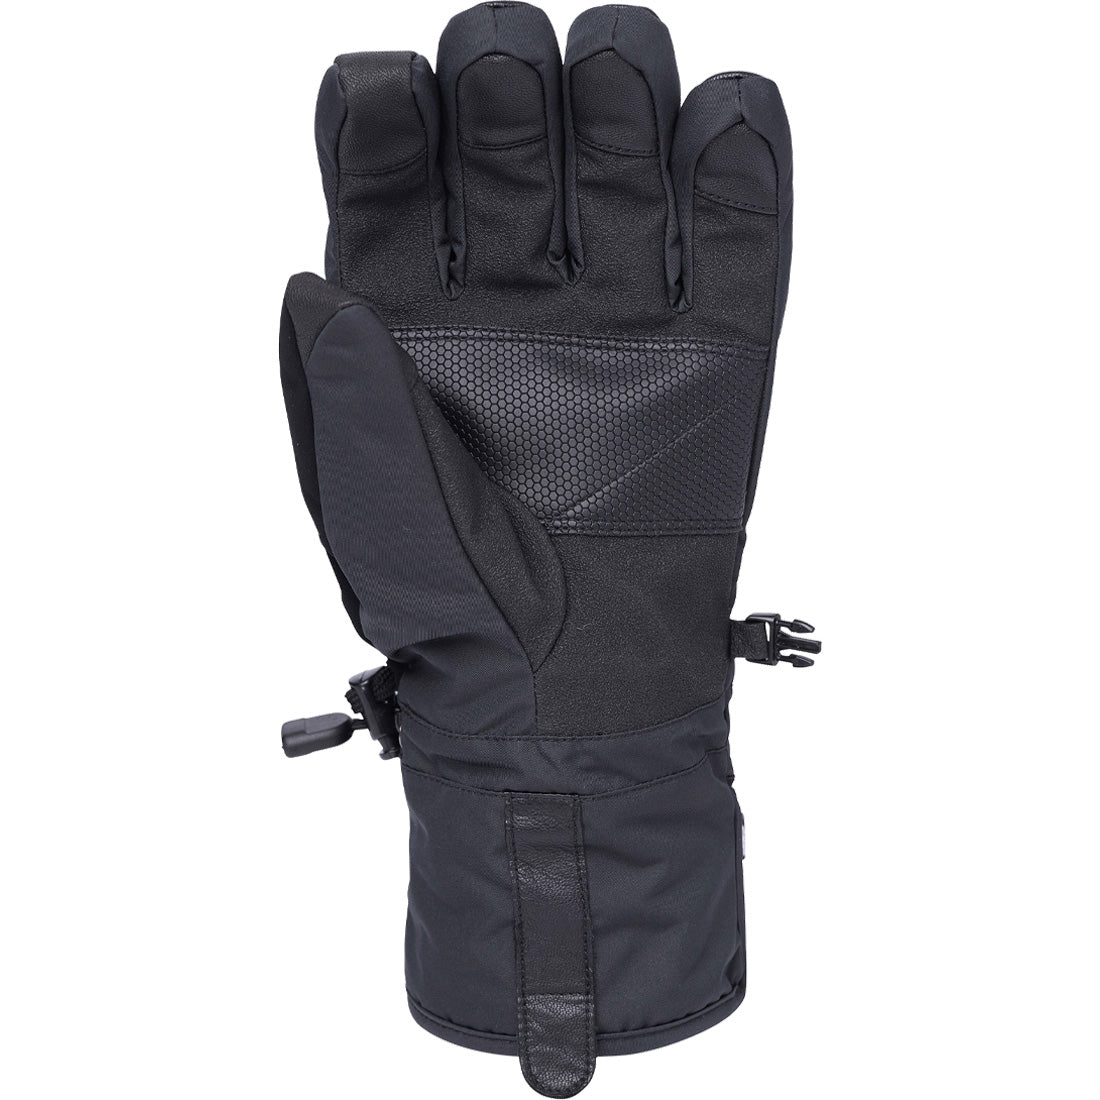 686 Infiloft Recon Glove - Men's